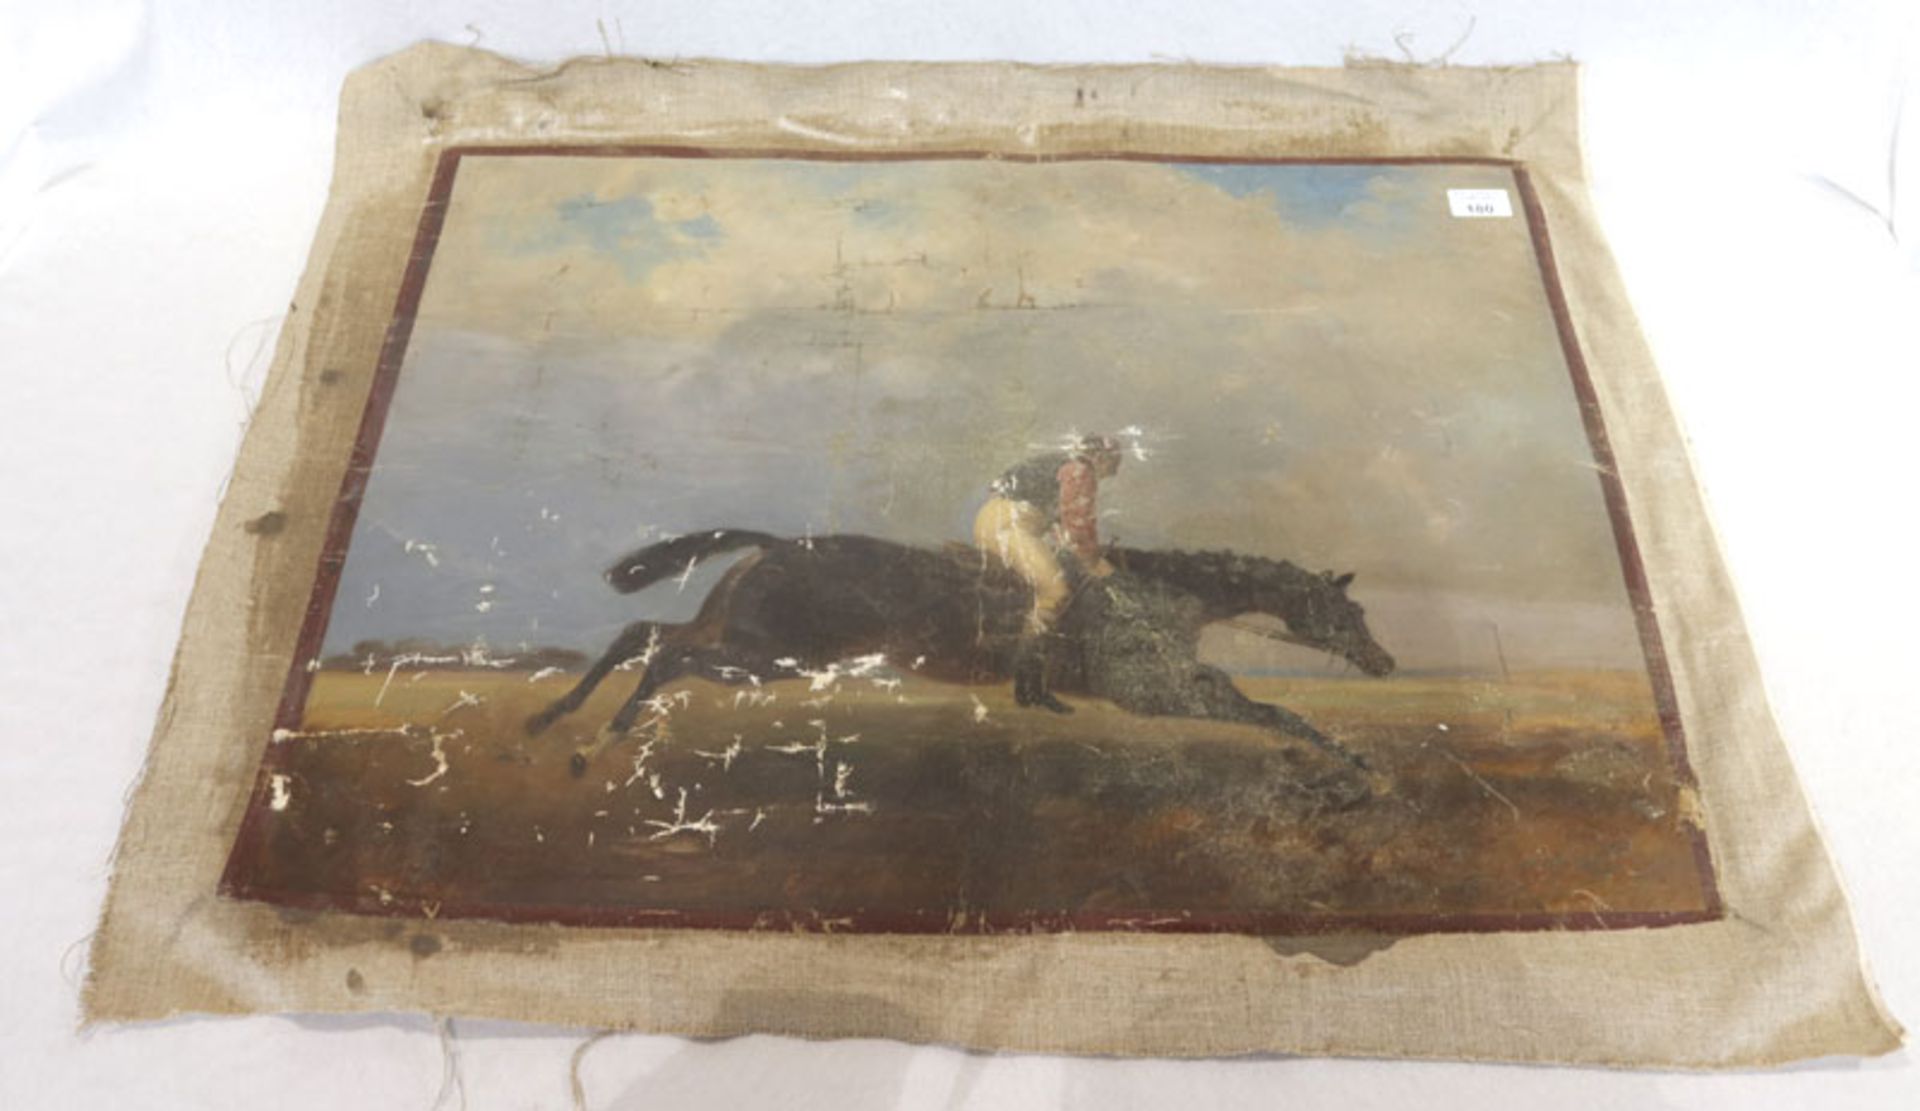 Gemälde ÖL/LW 'Reiter zu Pferd', LW stark beschädigt, ohne Rahmen 55 cm x 71 cm